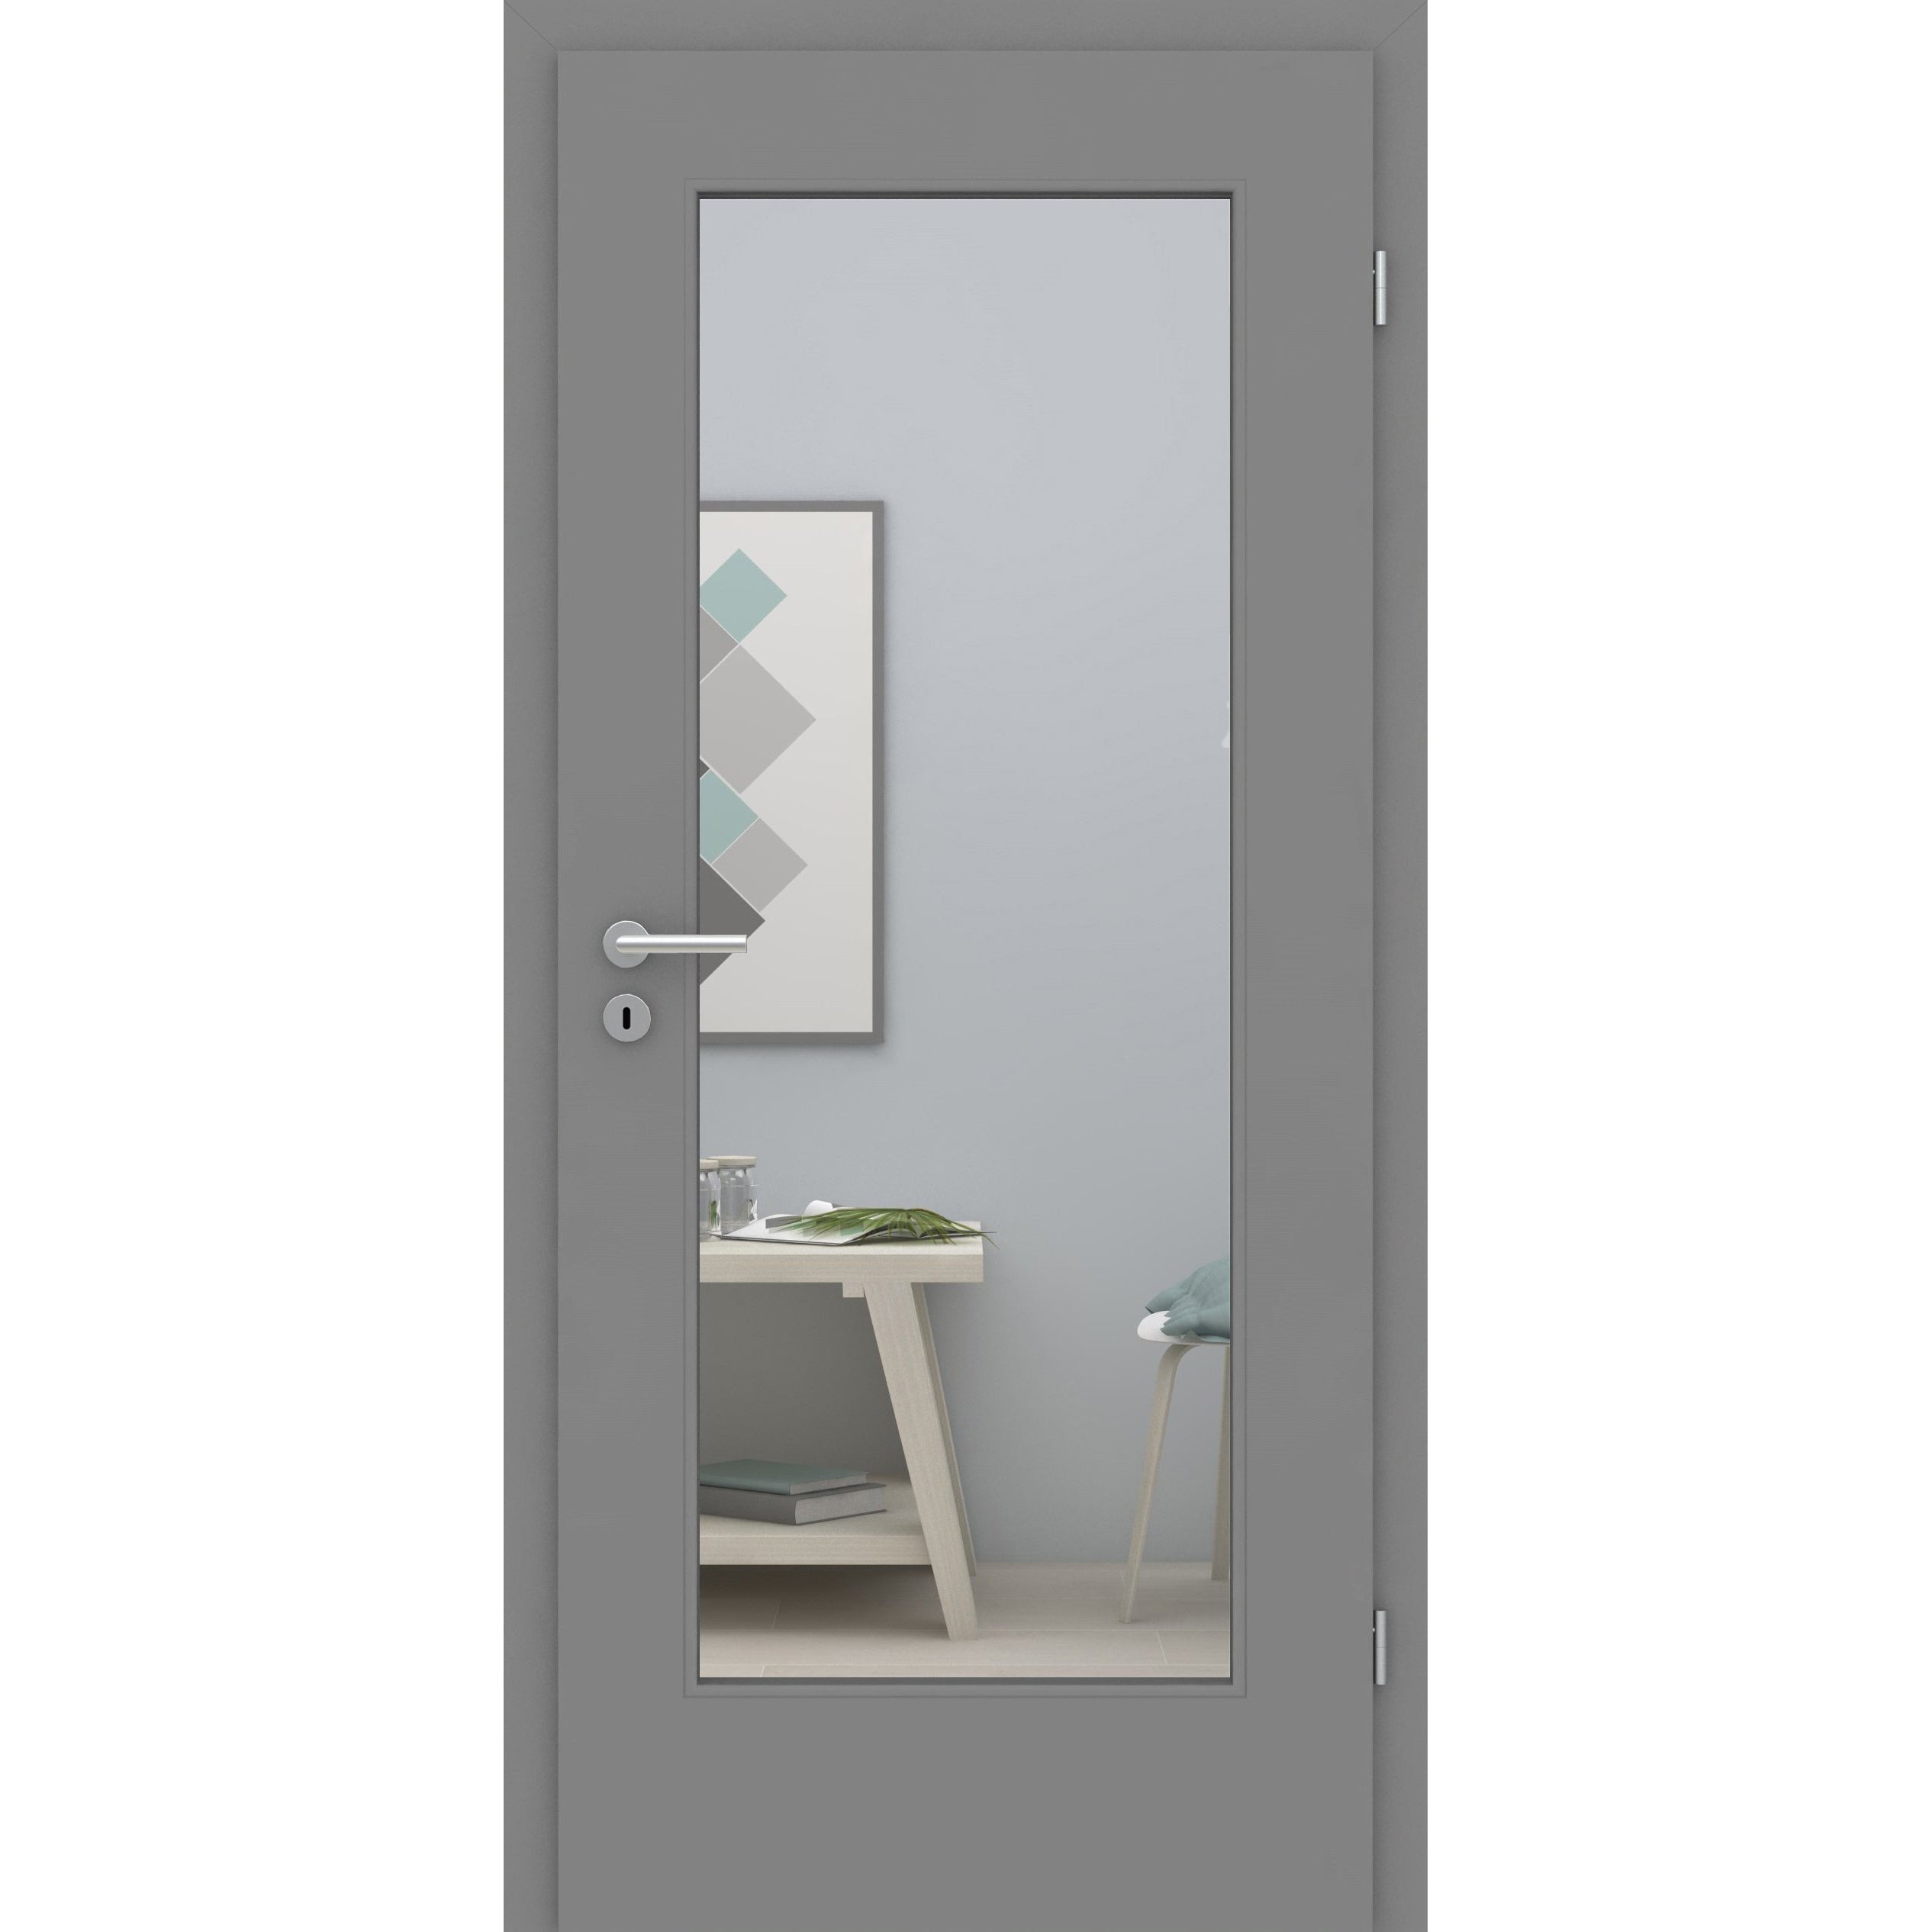 Zimmertür mit Zarge und Lichtausschnitt groß grau glatt Designkante - Modell LA1